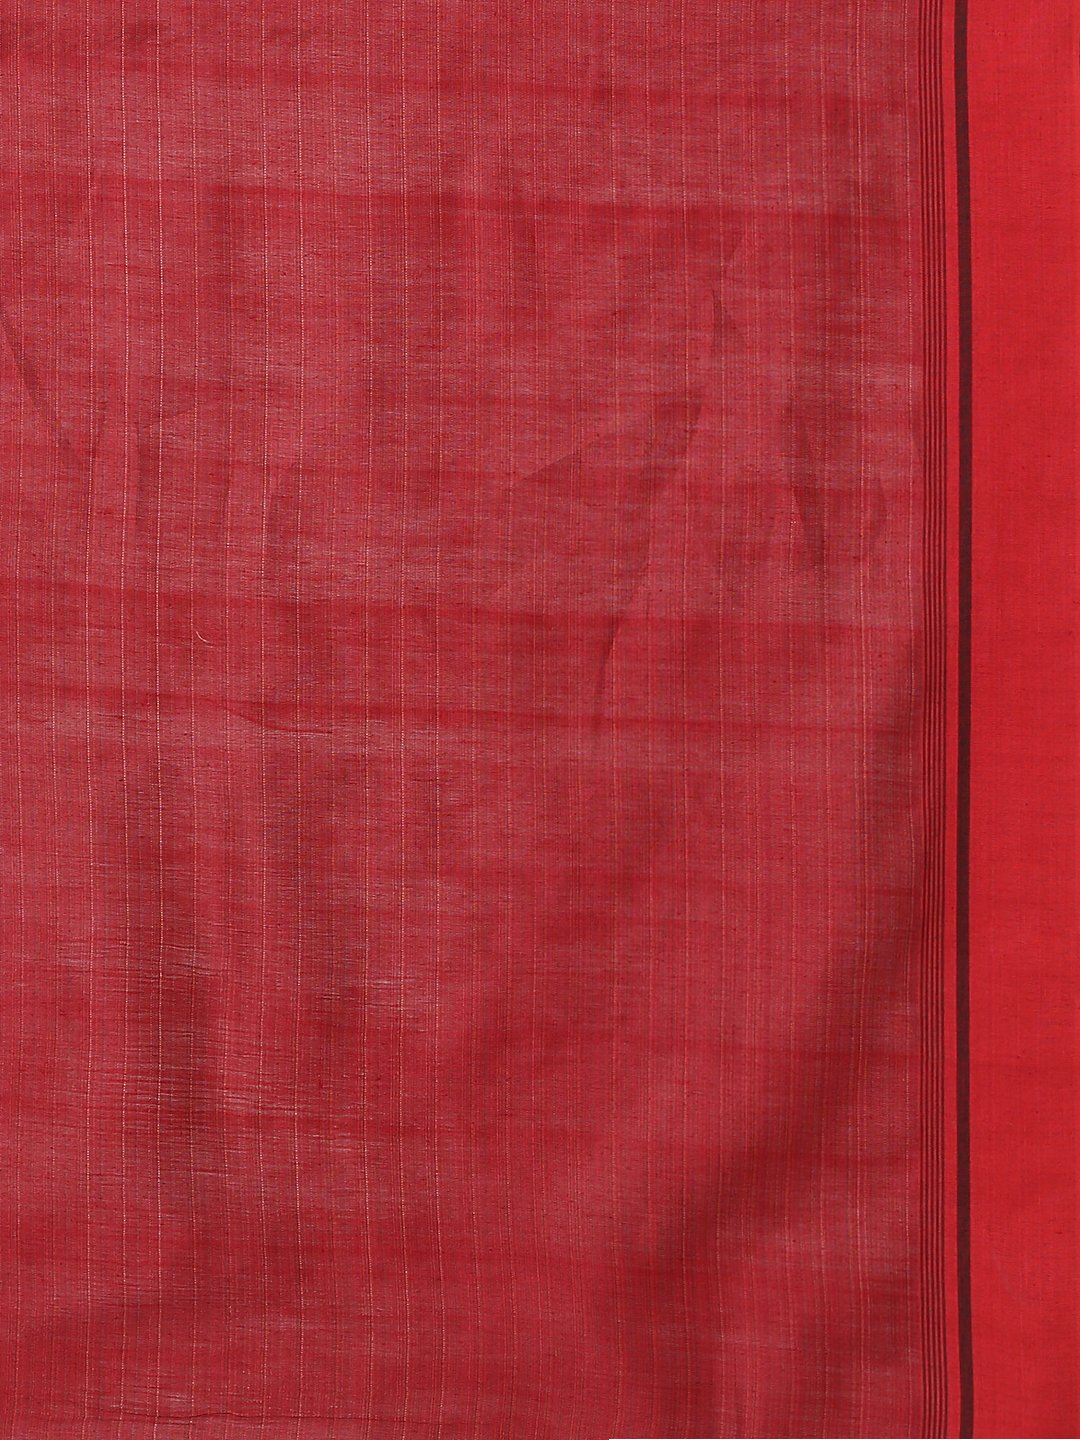 Beige & red tussar silk saree